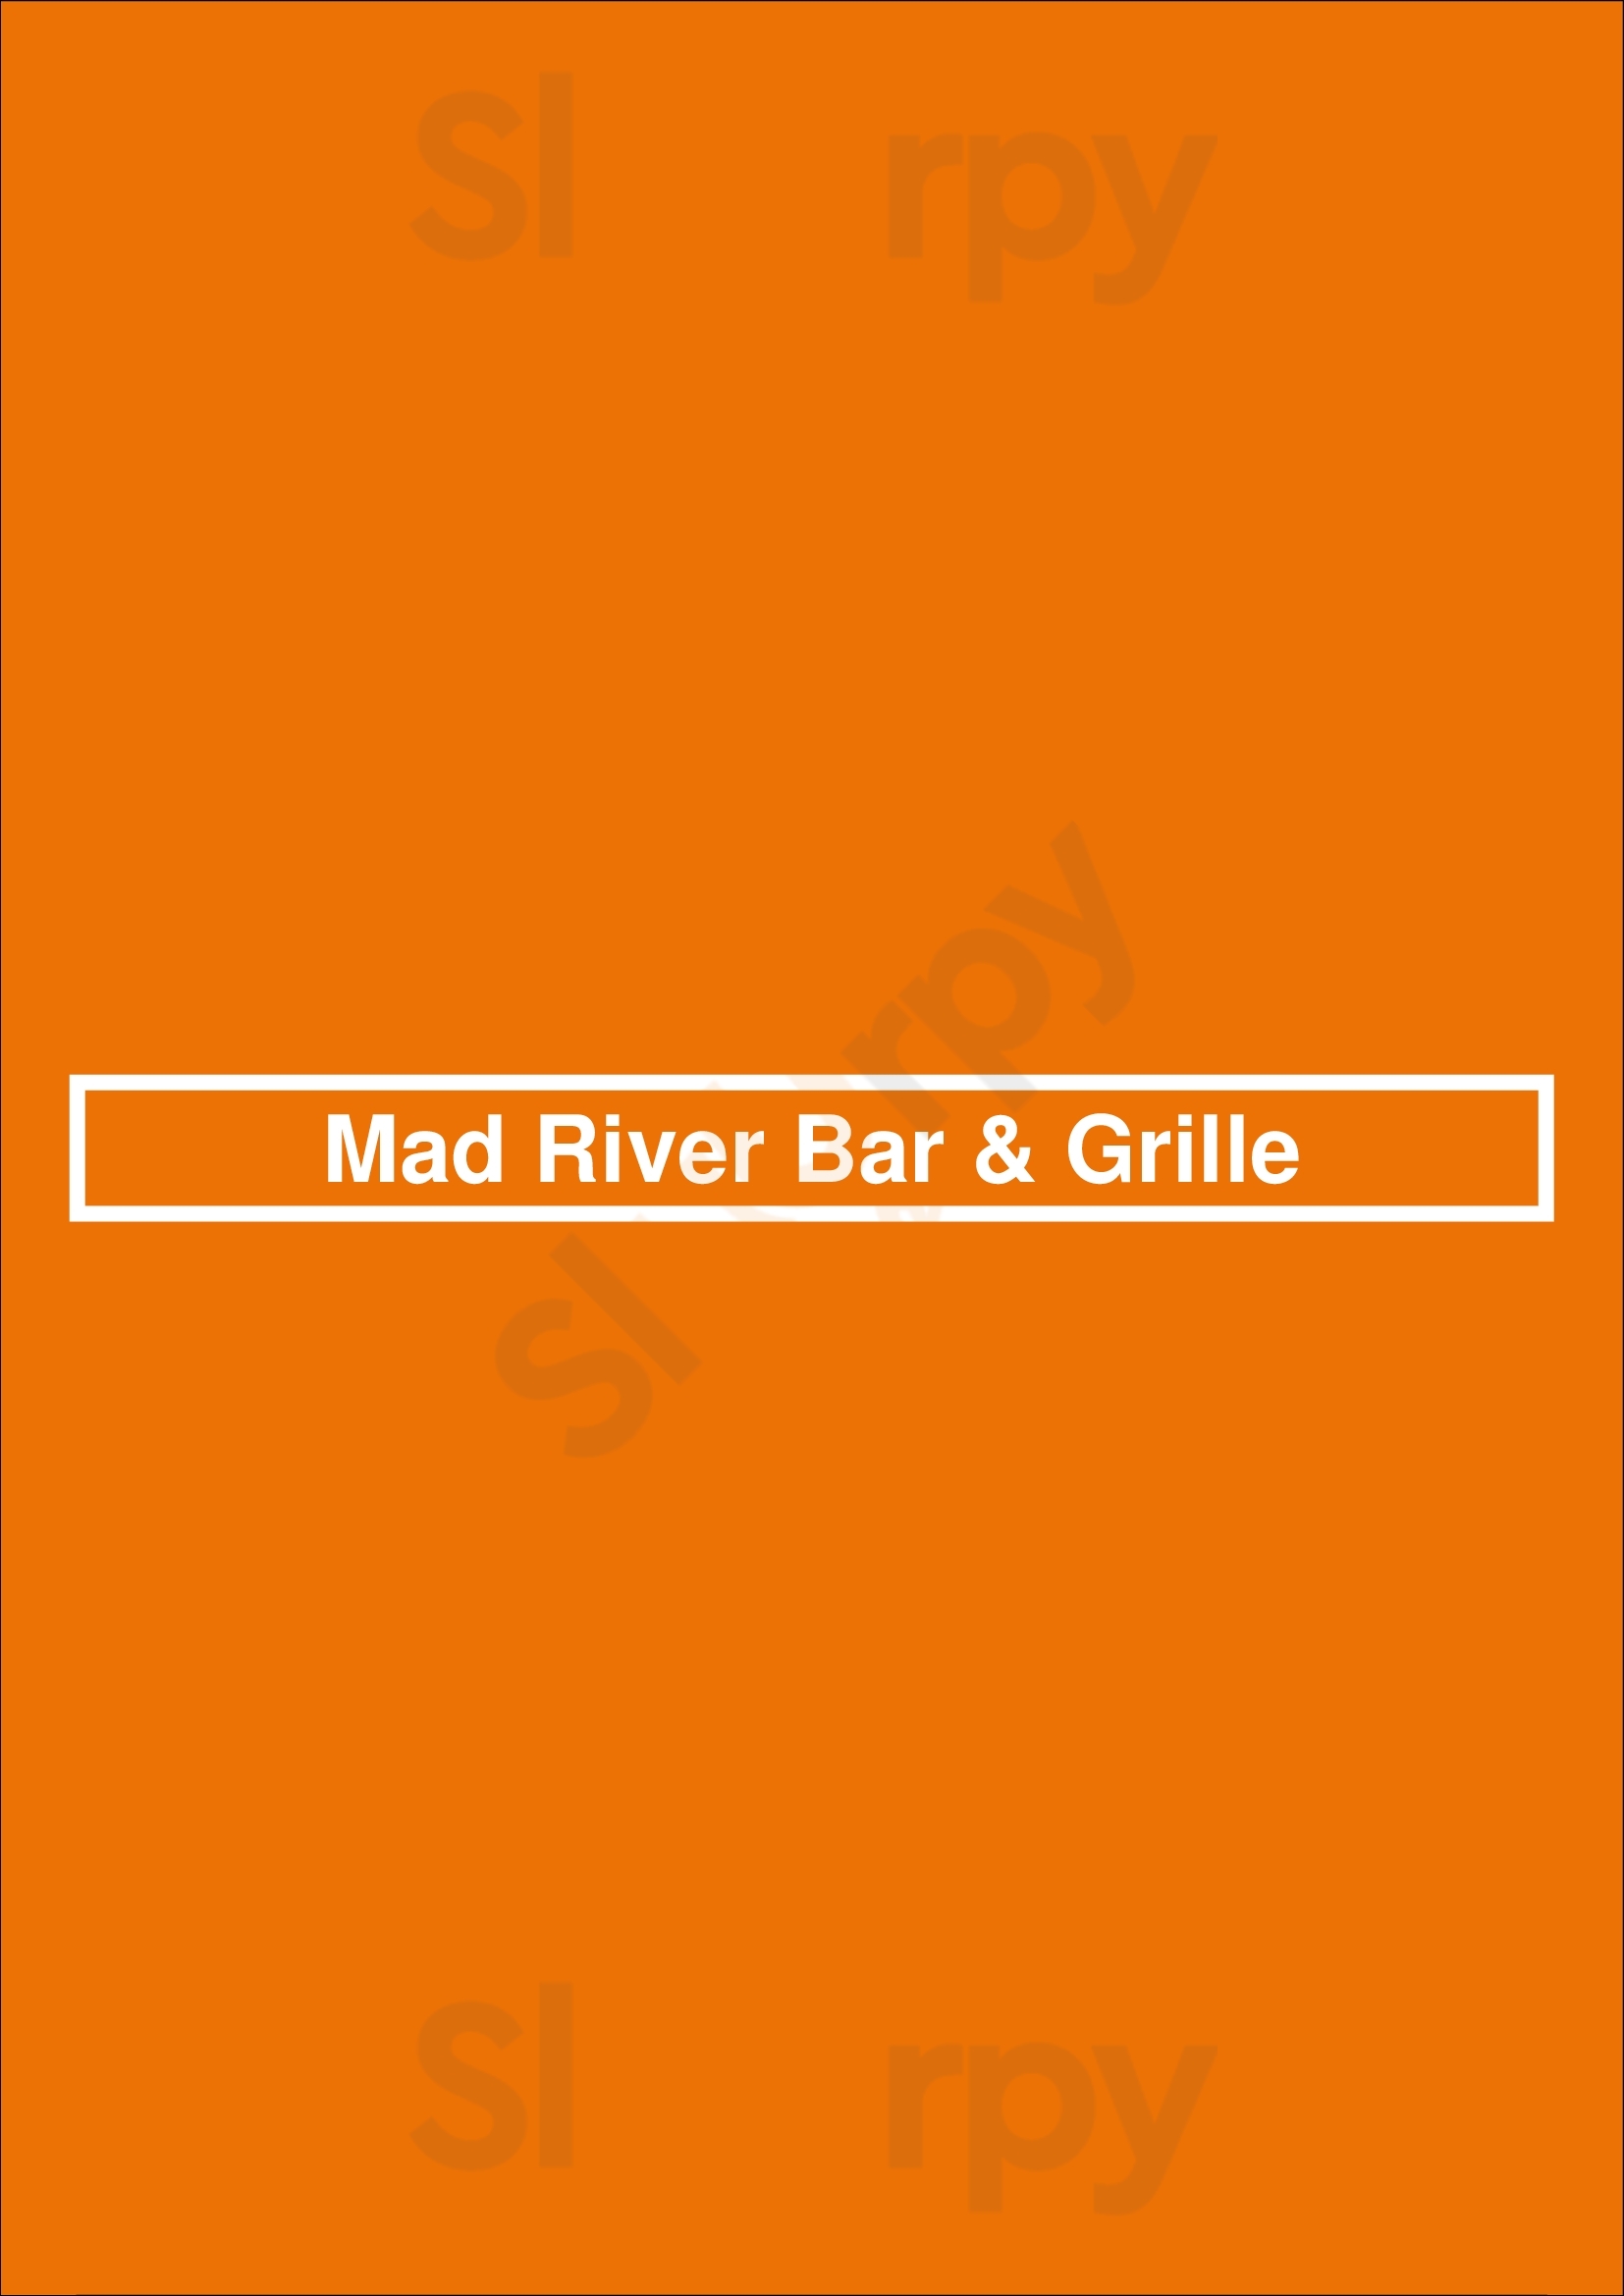 Mad River Bar & Grille Chicago Menu - 1